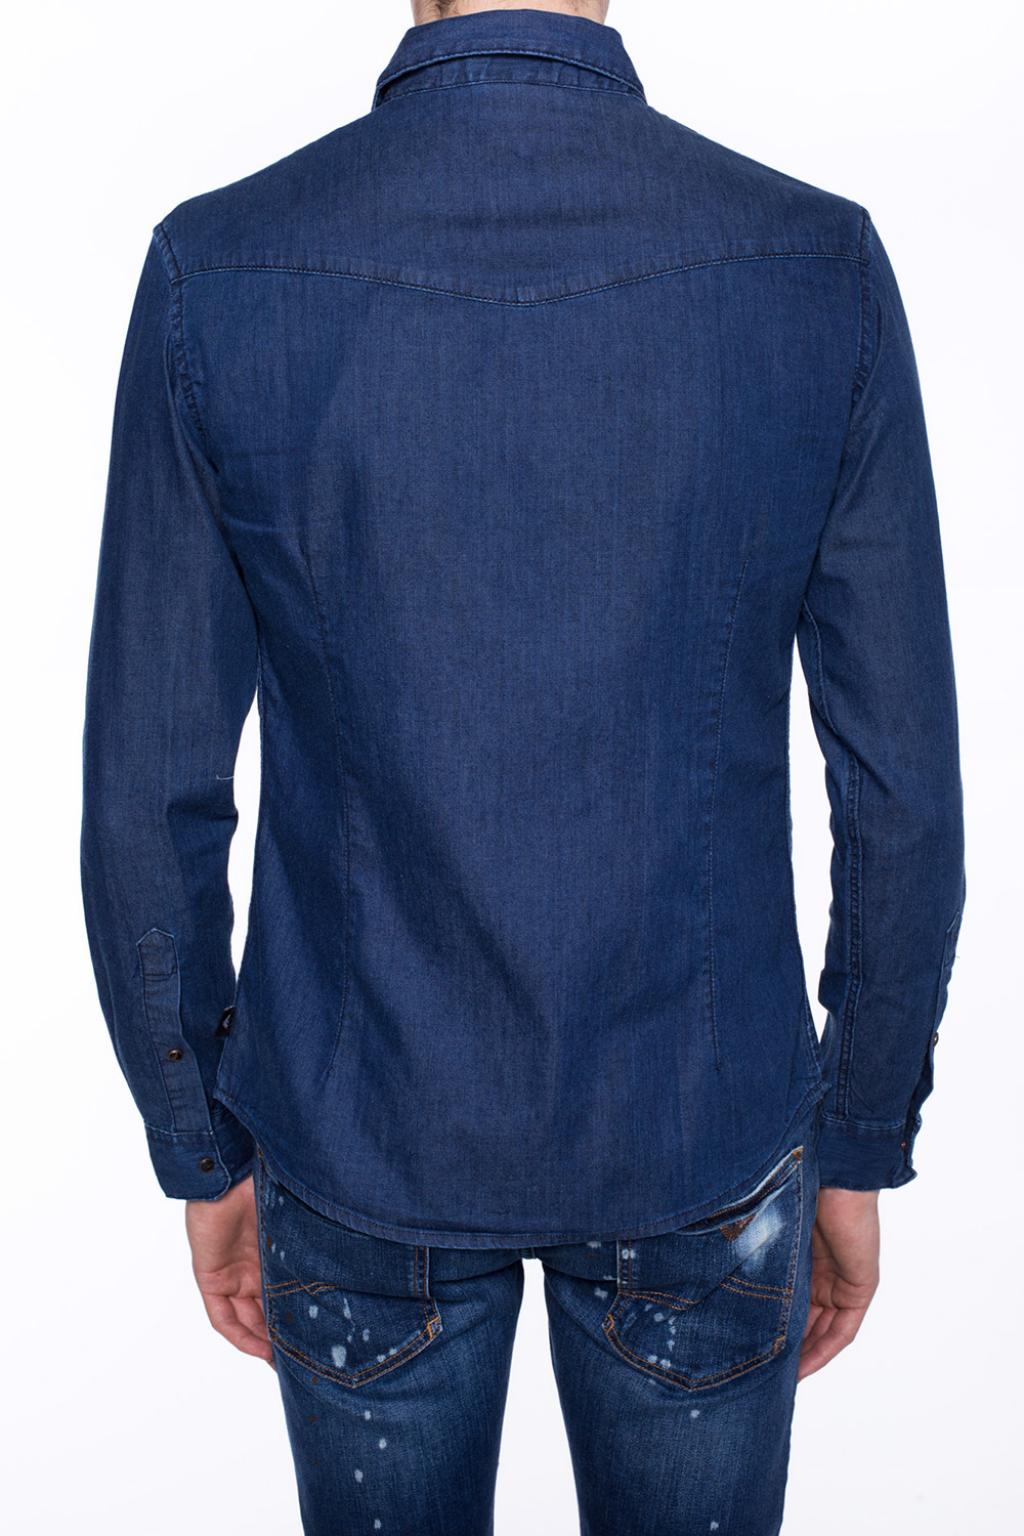 Emporio Armani Denim shirt | Men's Clothing | Vitkac